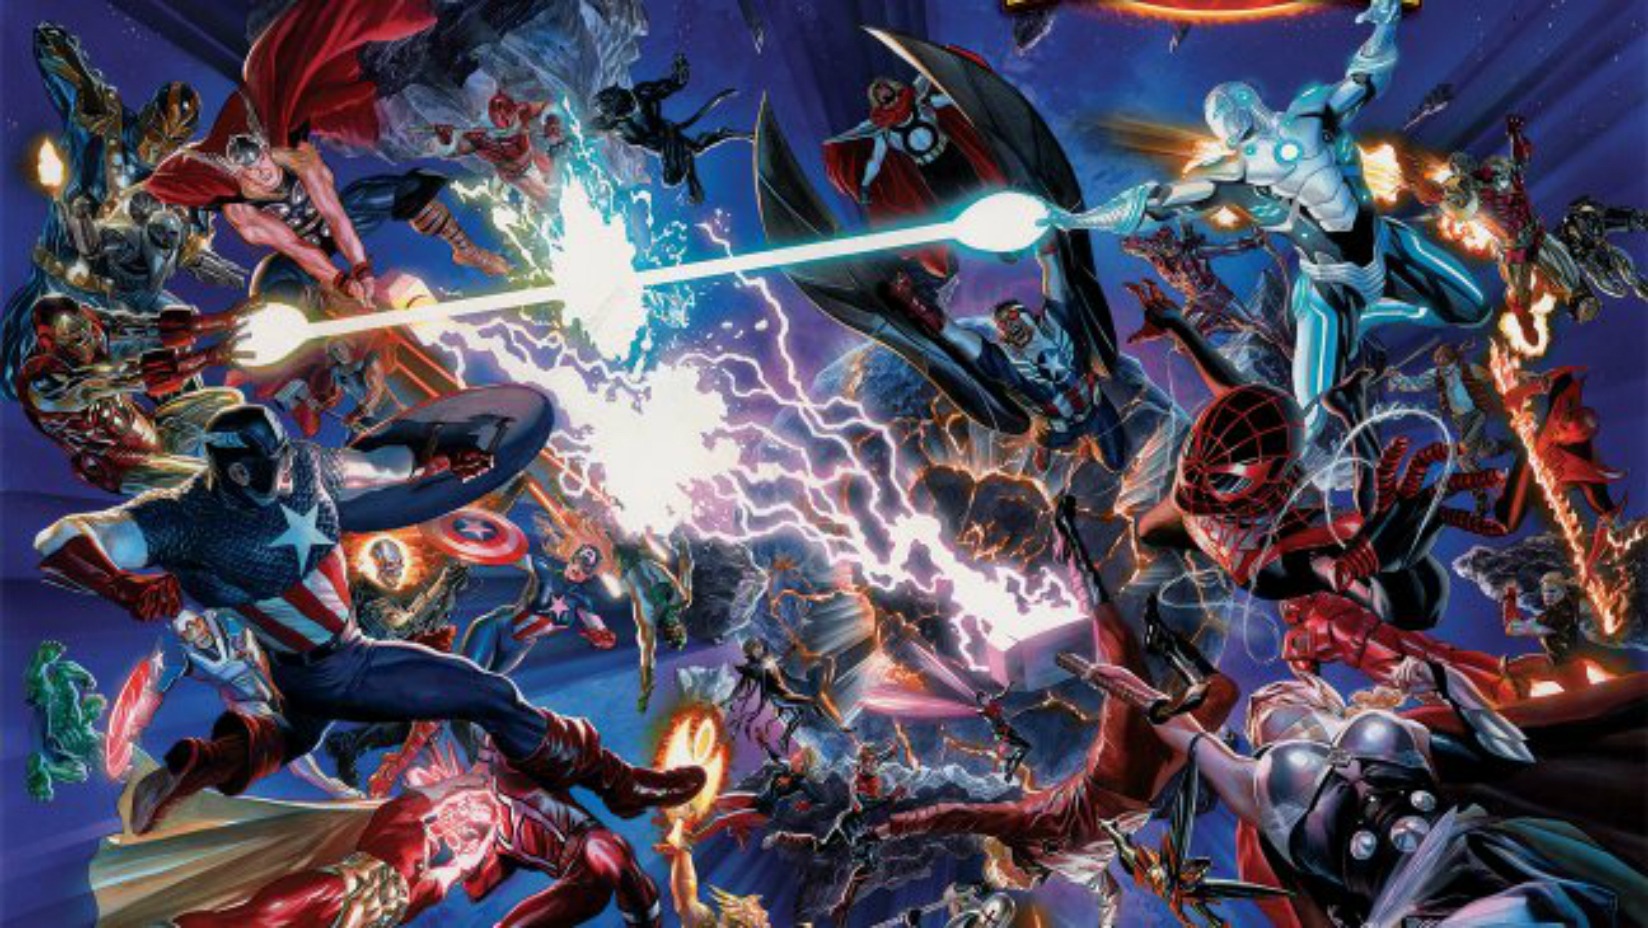 Avengers: Secret Wars - Cuộc chiến đa vũ trụ hoành tráng nhất nhì lịch sử Marvel sắp đến